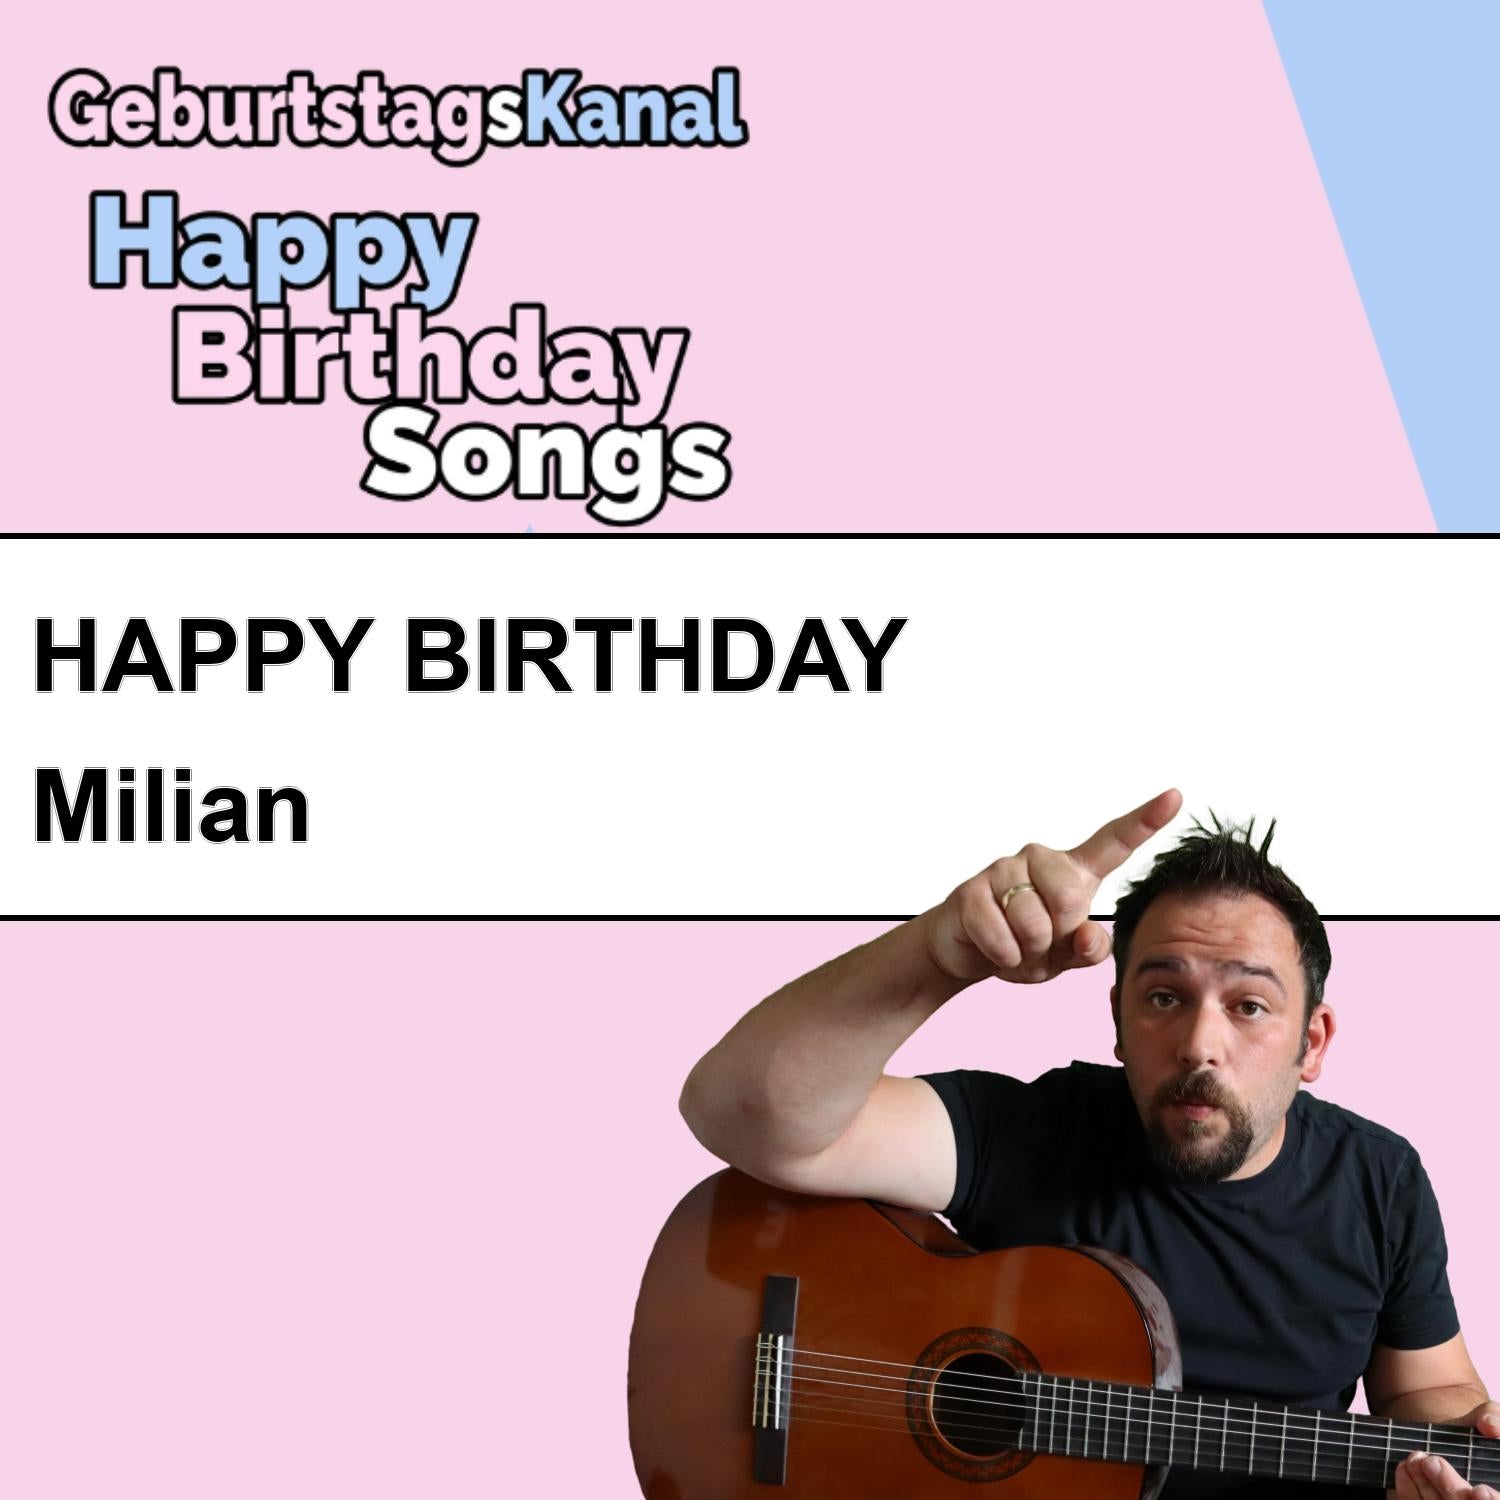 Produktbild Happy Birthday to you Milian mit Wunschgrußbotschaft